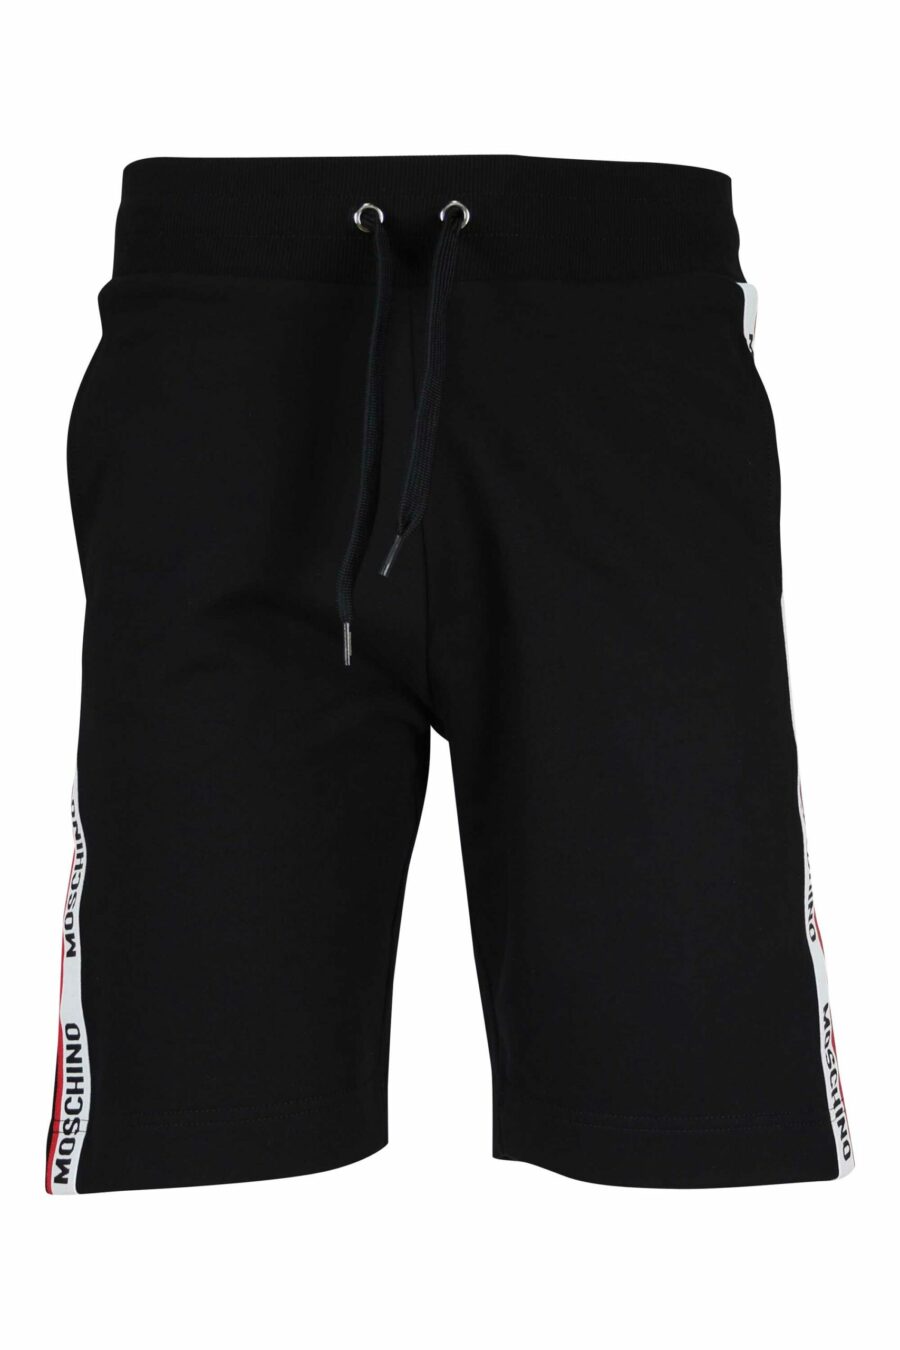 Pantalón de chándal corto negro con logo en cinta vertical - 667113624945 scaled